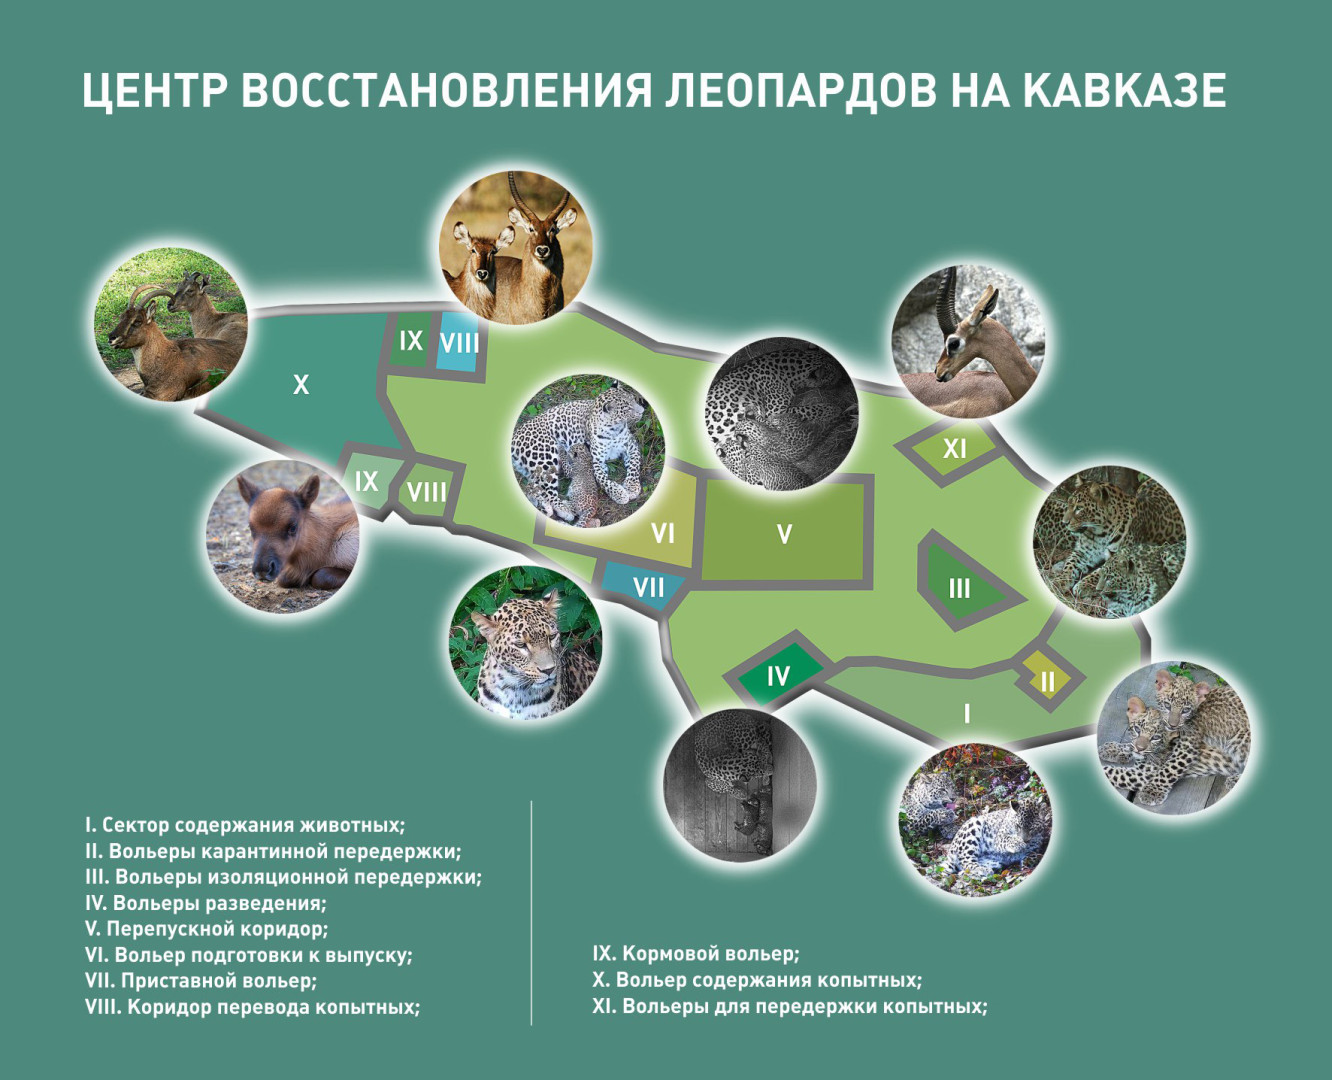 Схема Центра восстановления леопардов на Кавказе